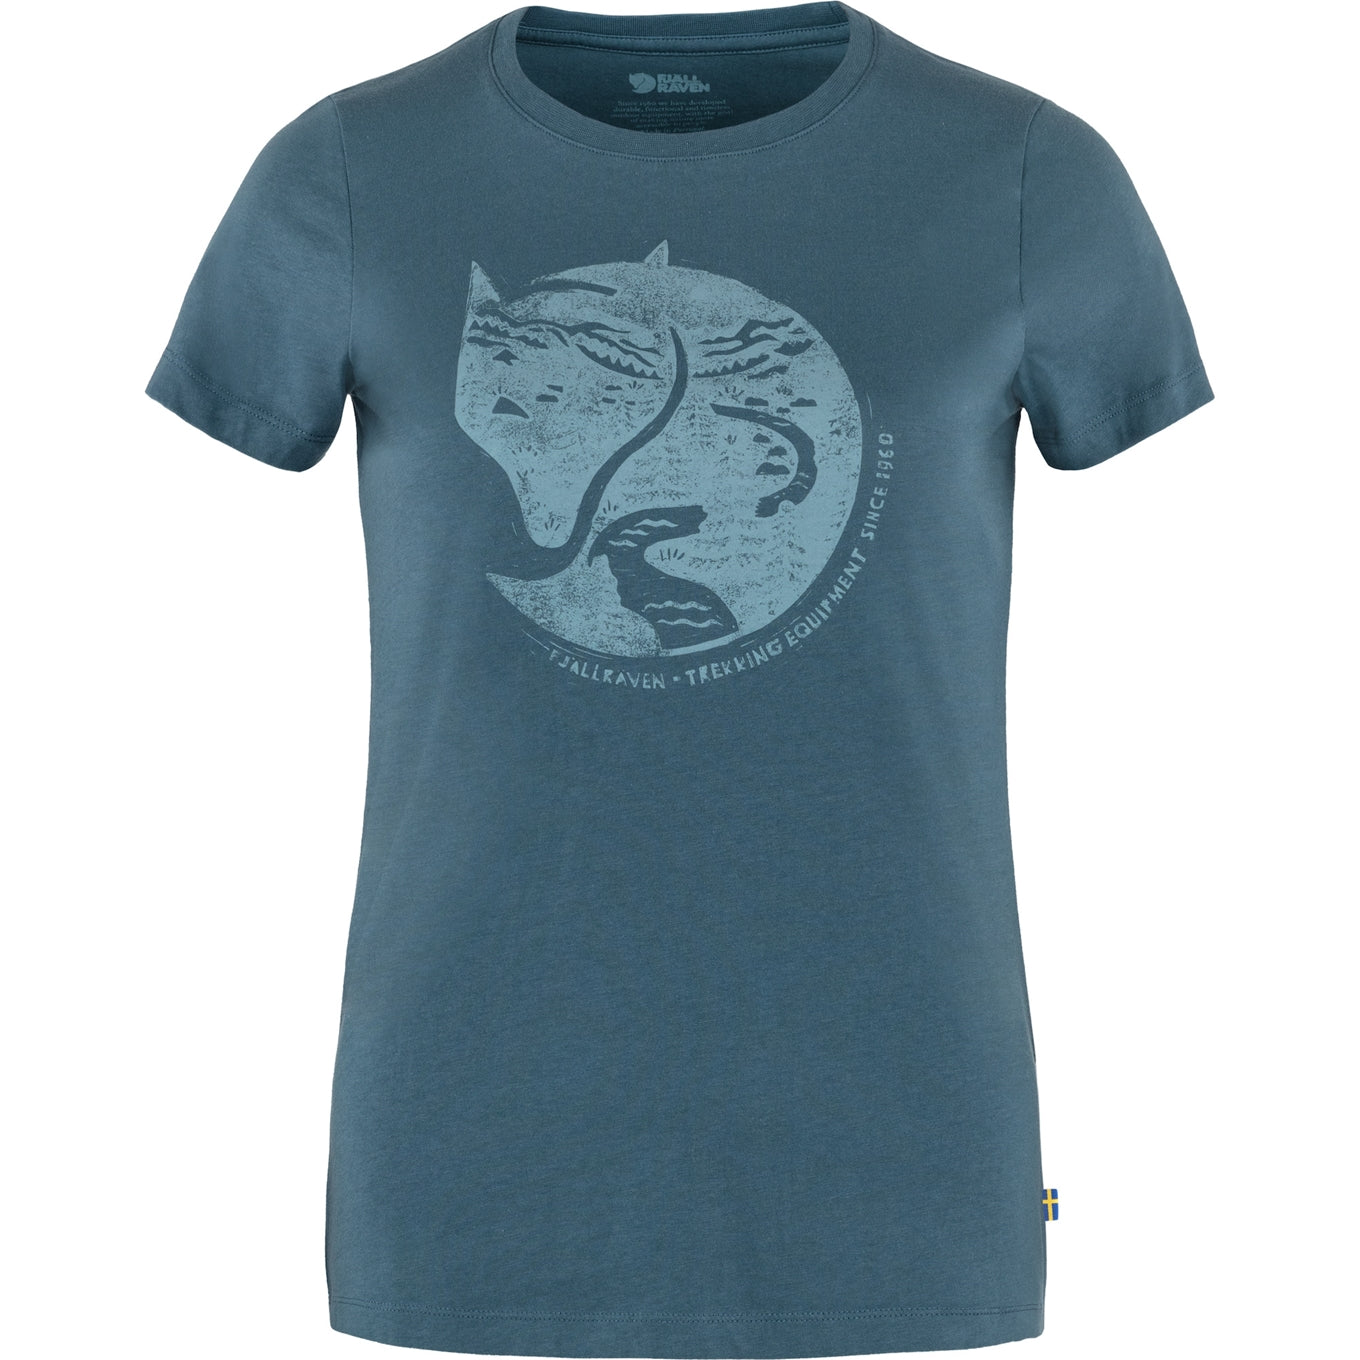 Fjallraven Artic Fox T-shirt Women